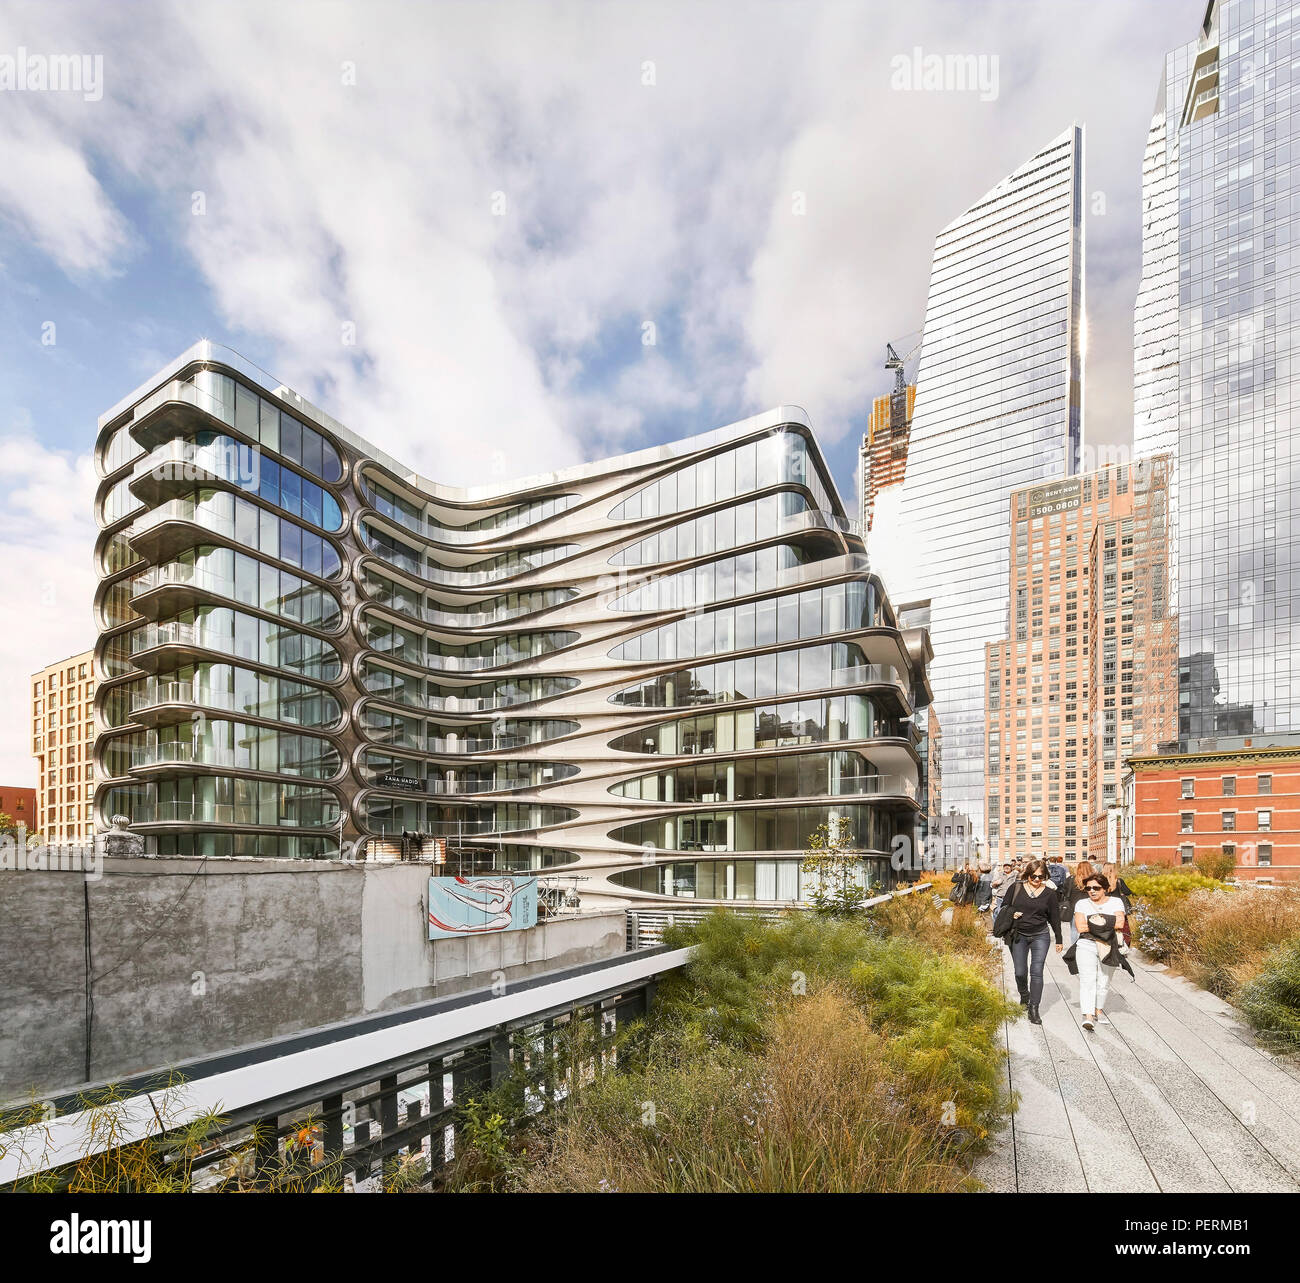 La façade extérieure, l'avis de lignes. 520 West 28th Street, New York, United States. Architecte : Zaha Hadid Architects, 2017. Banque D'Images